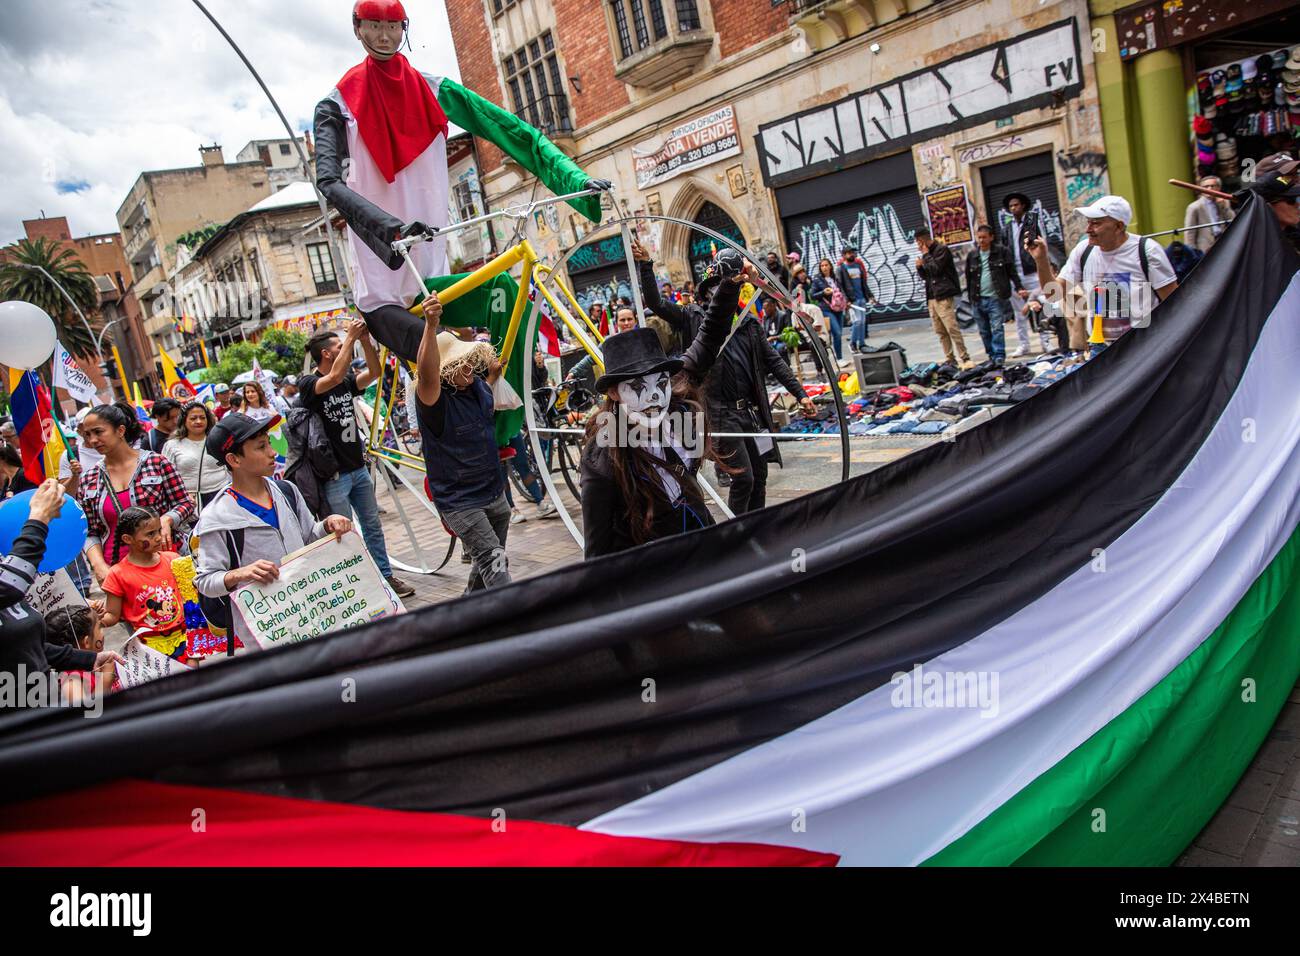 Palästinensische Flaggen werden auf dem marsch zugunsten der Regierung Gustavo Petros während eines massiven maimarsches in Bogotá gesehen, wo der kolumbianische Präsident Gustavo Petro das Ende der diplomatischen Beziehungen zu Israel erklärte. Quelle: SOPA Images Limited/Alamy Live News Stockfoto